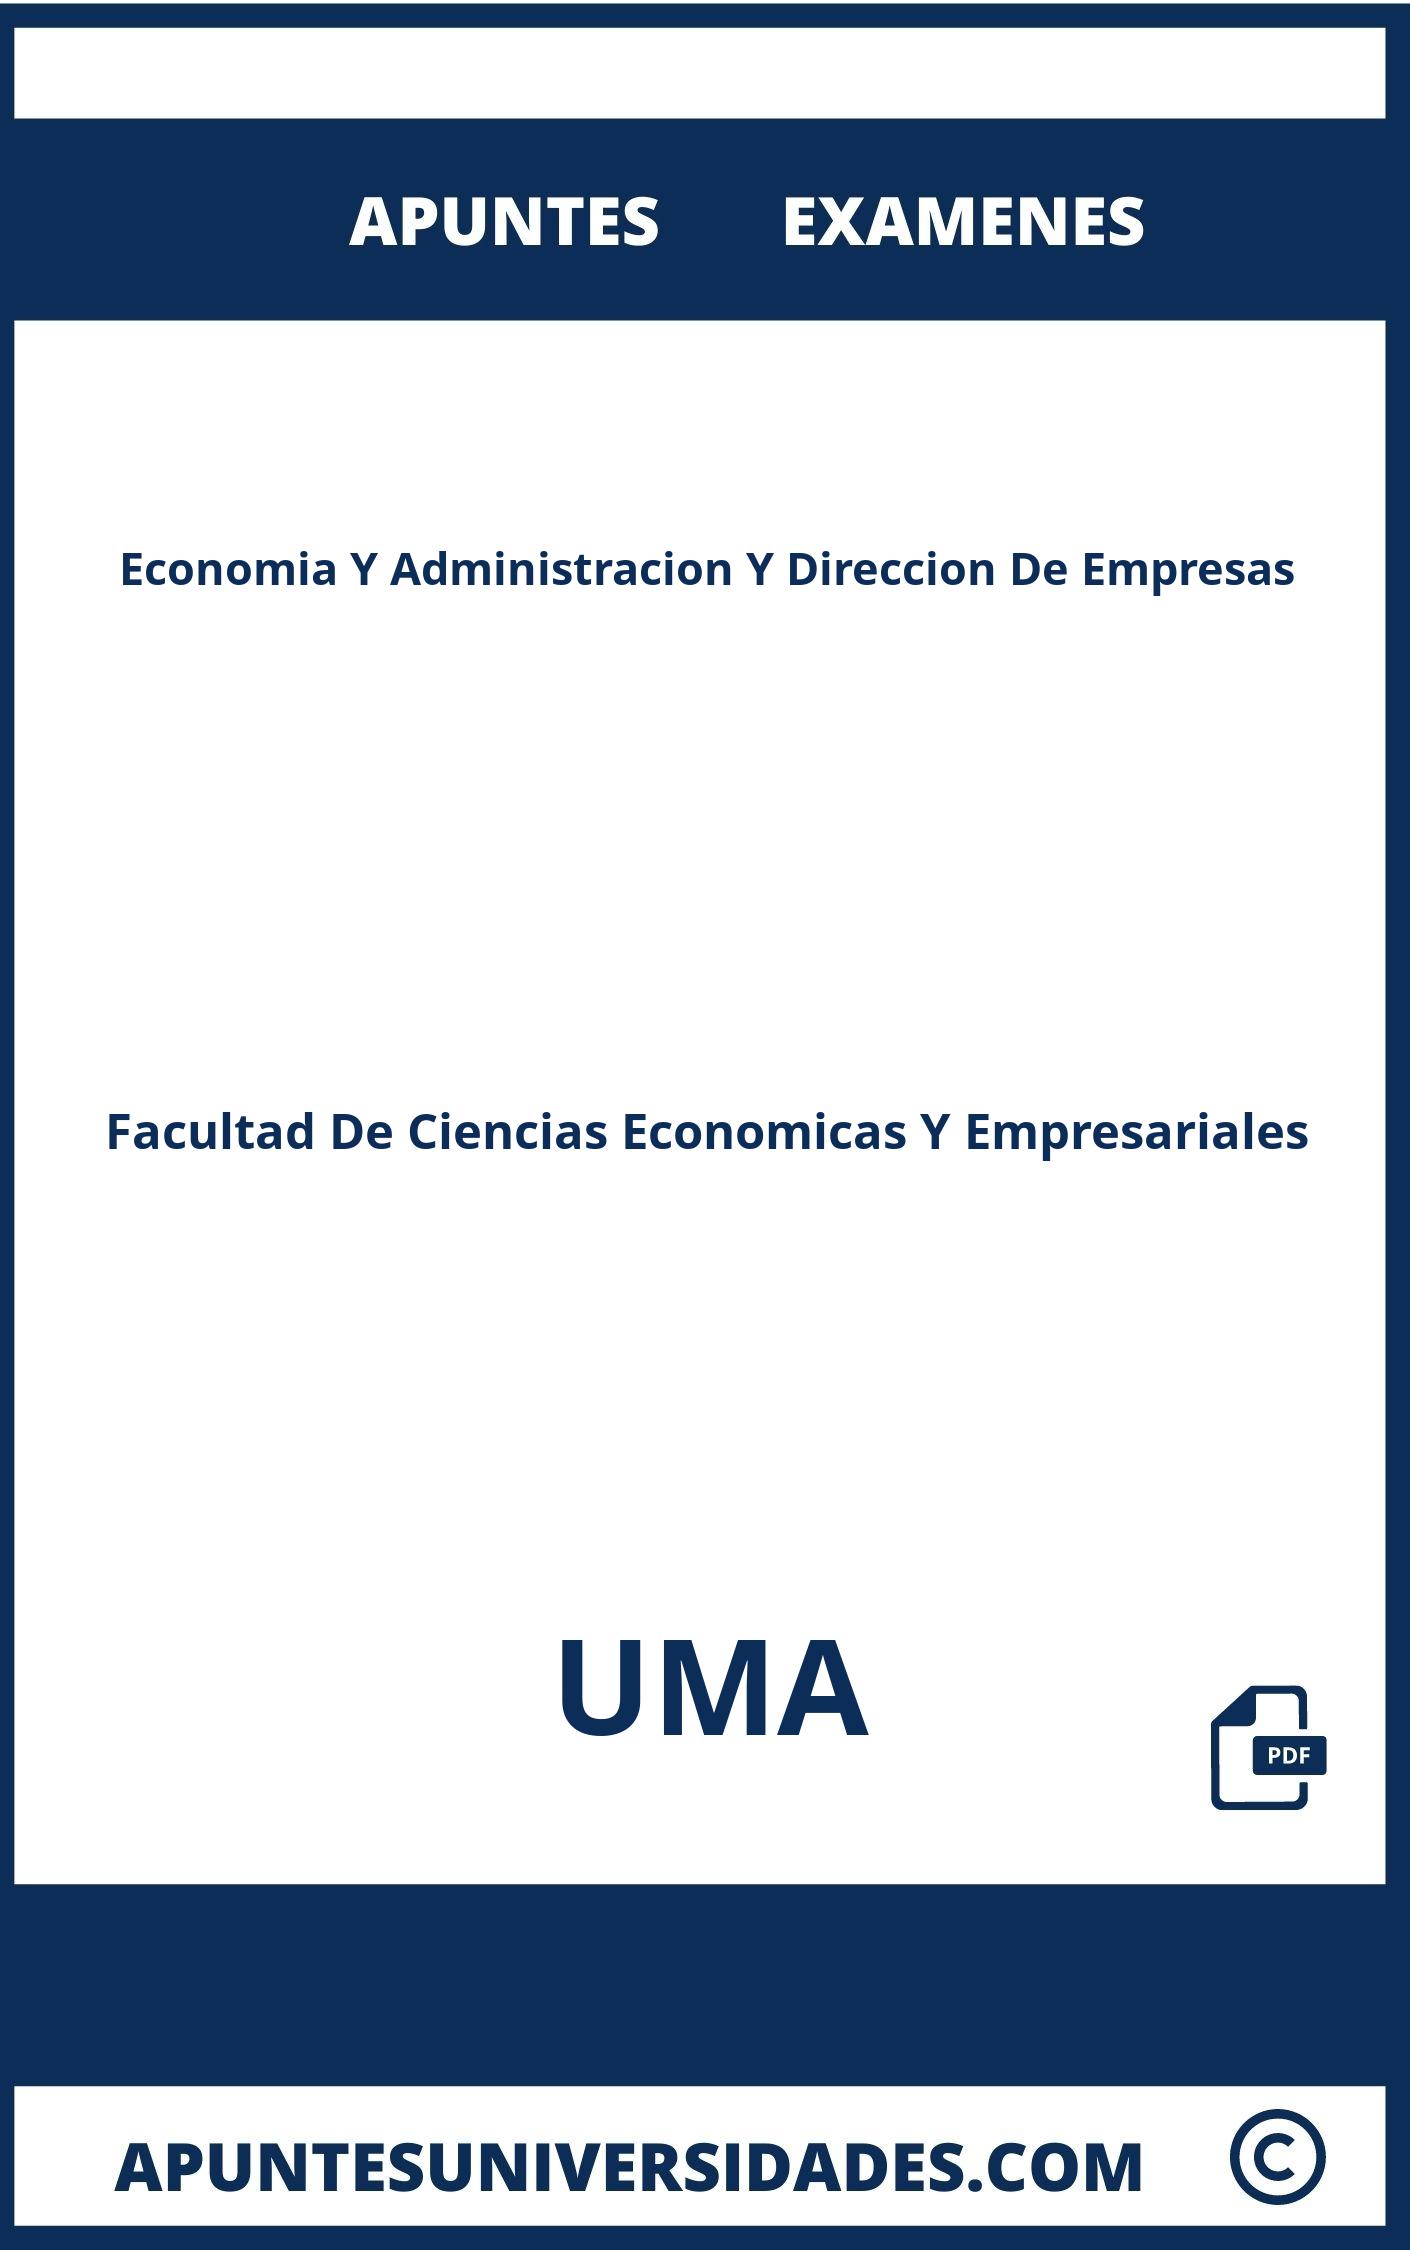 Examenes y Apuntes de Economia Y Administracion Y Direccion De Empresas UMA